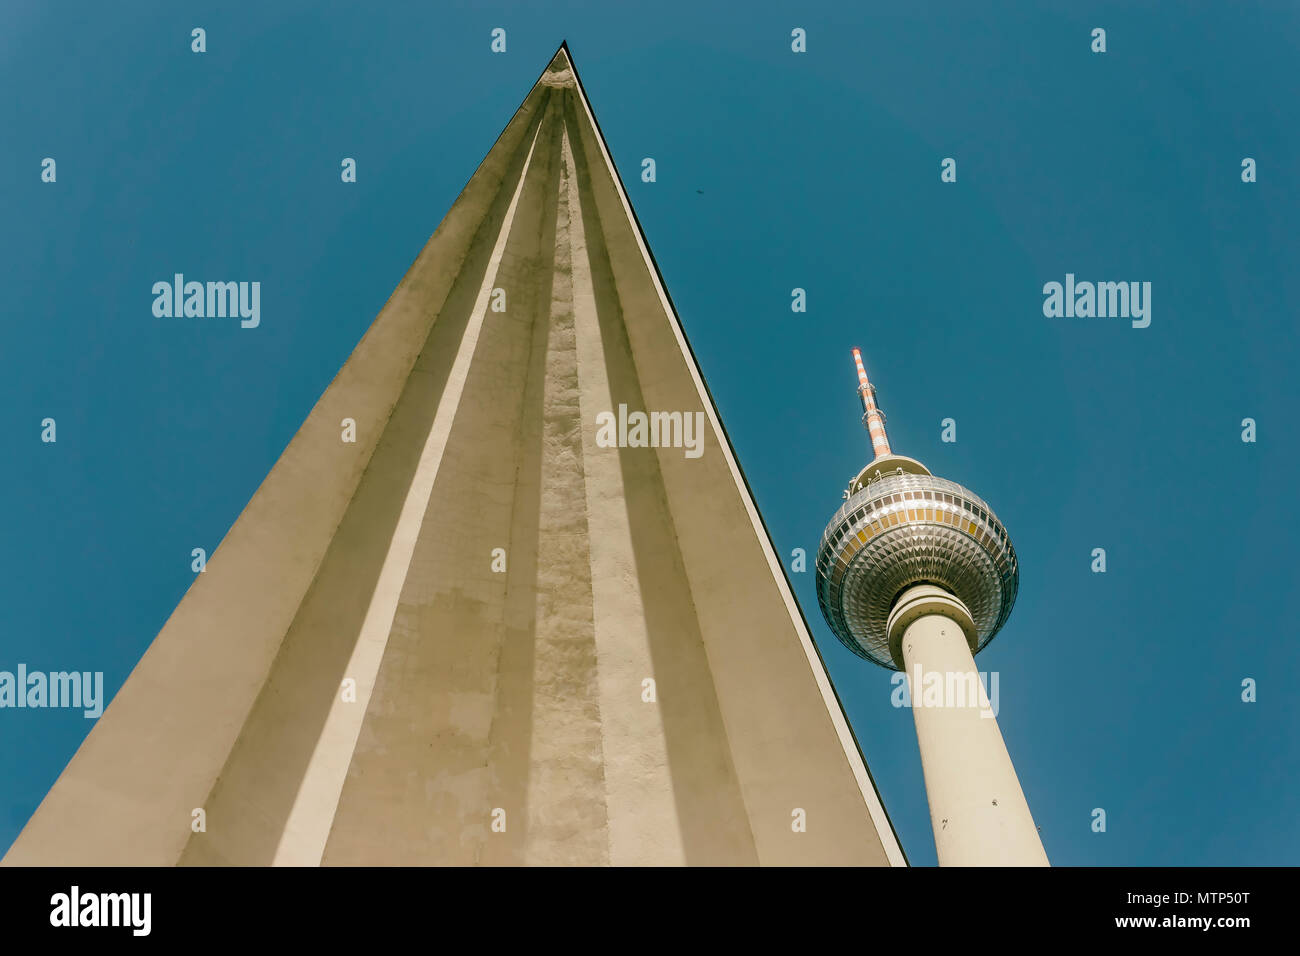 Berlino, Germania, maggio 08, 2018: TV Tower con triangolare caratteristica architettonica Foto Stock